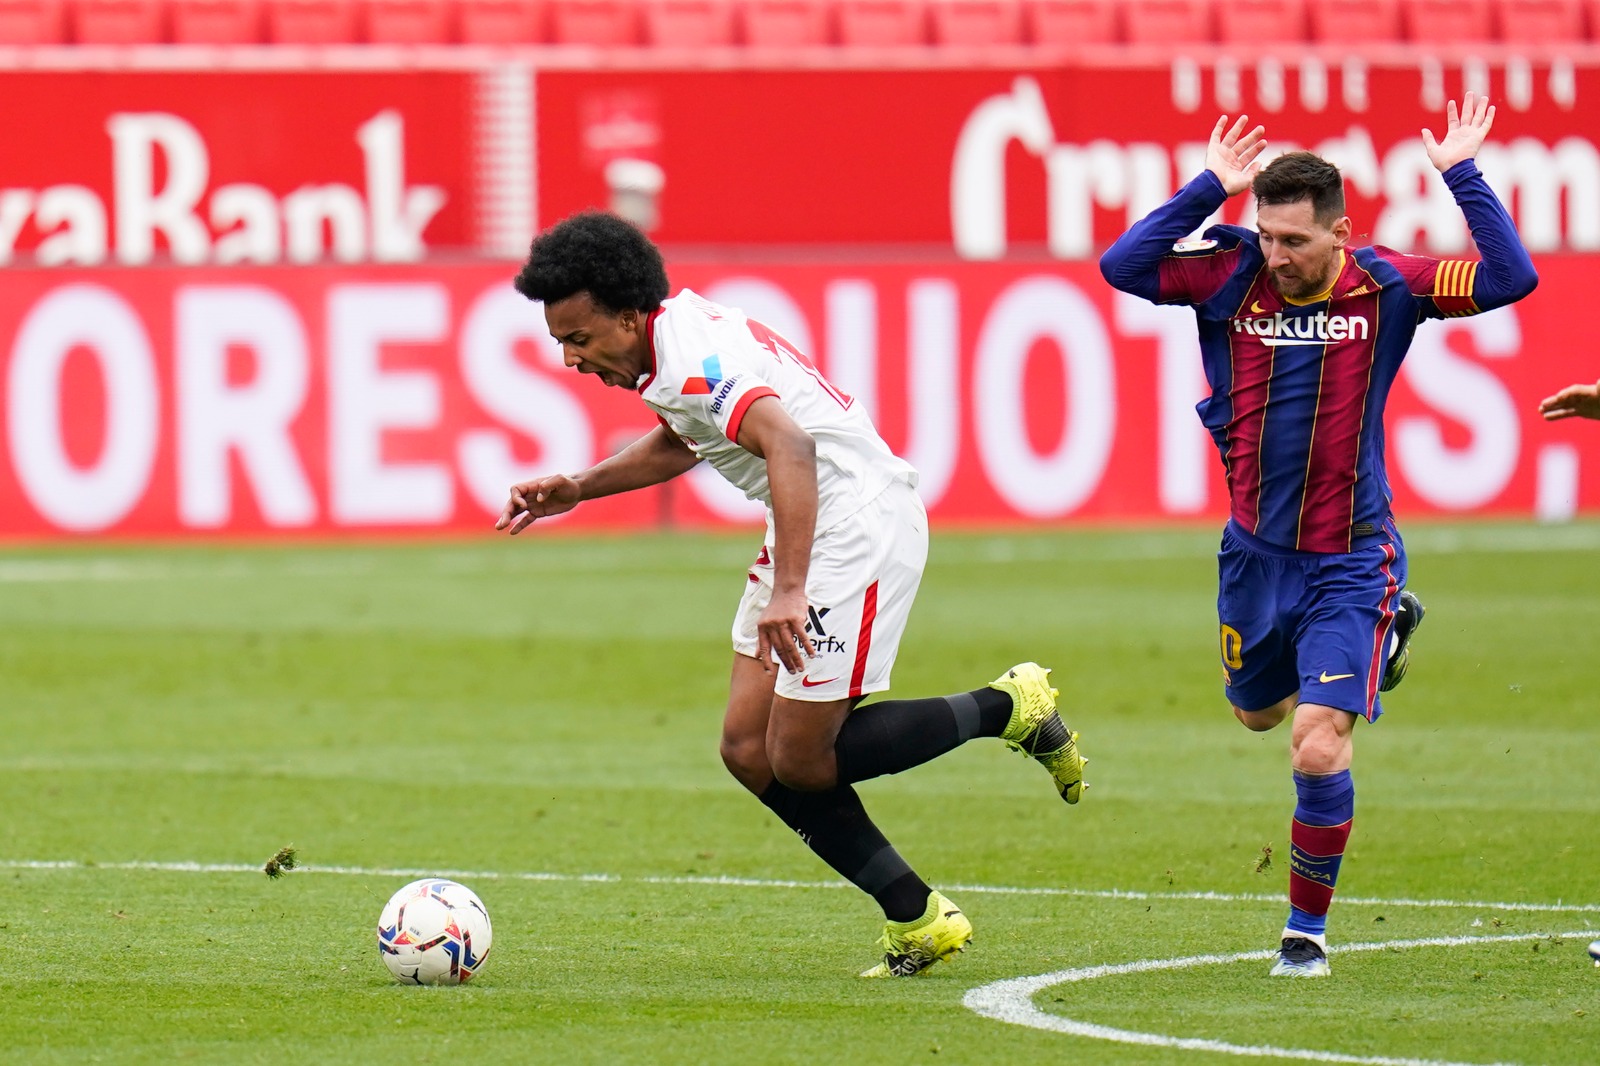 Sevilla FC's Koundé against FC Barcelona